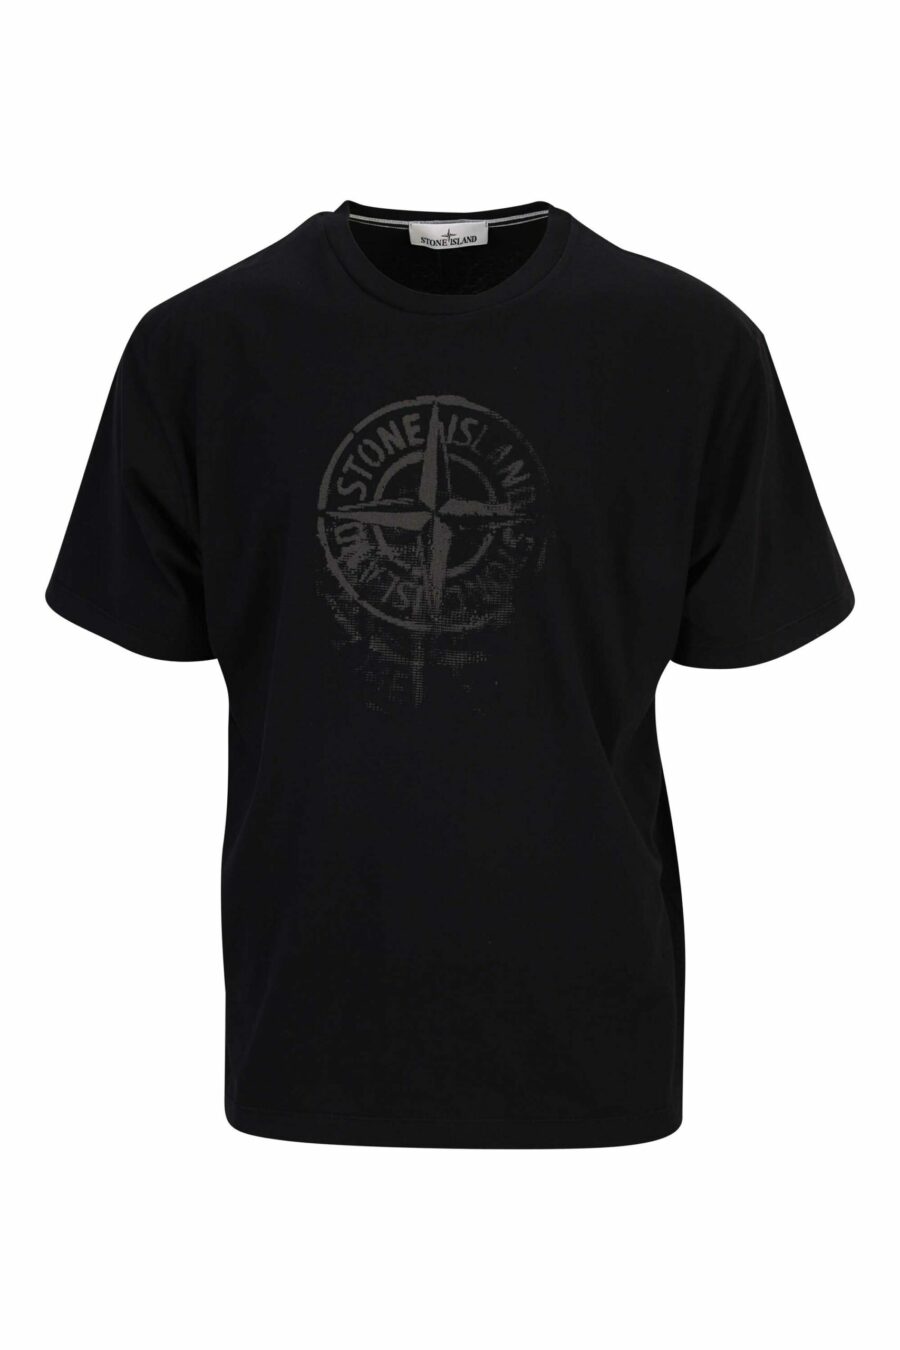 T-shirt preta com maxilogo de bússola - 8052572907272 scaled